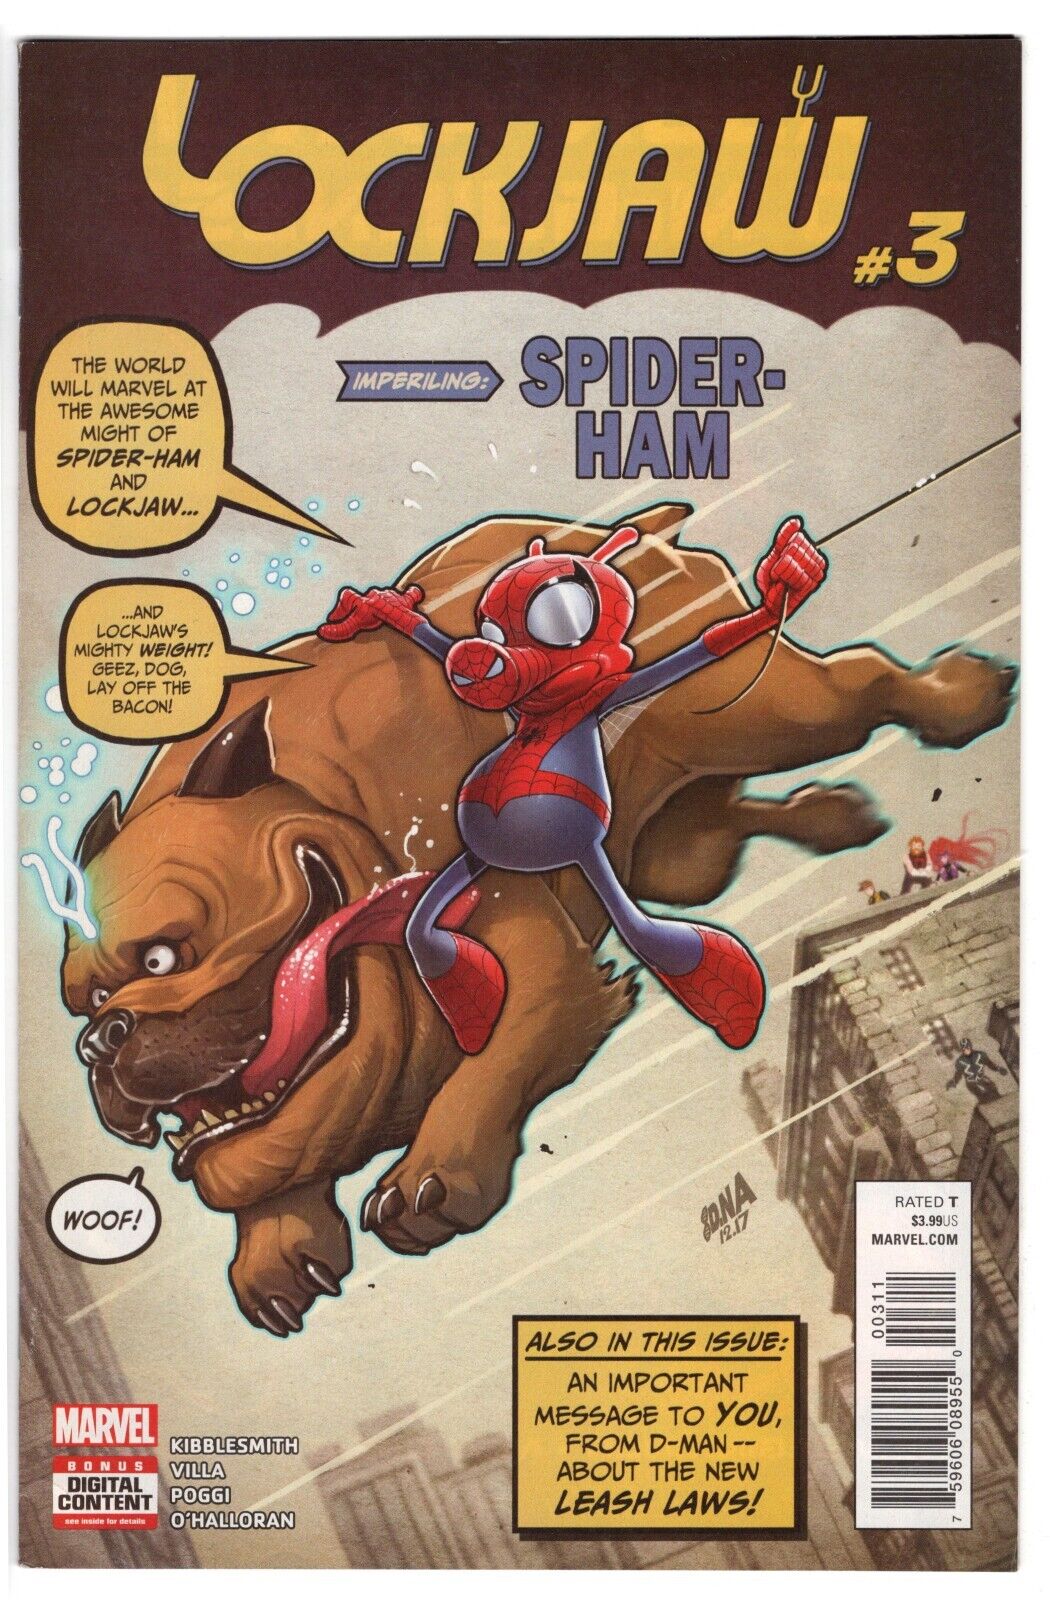 LOCKJAW #3 (2018 )- Marvel - 1st Print AF #15 Homage Cover w/ Spider-Ham